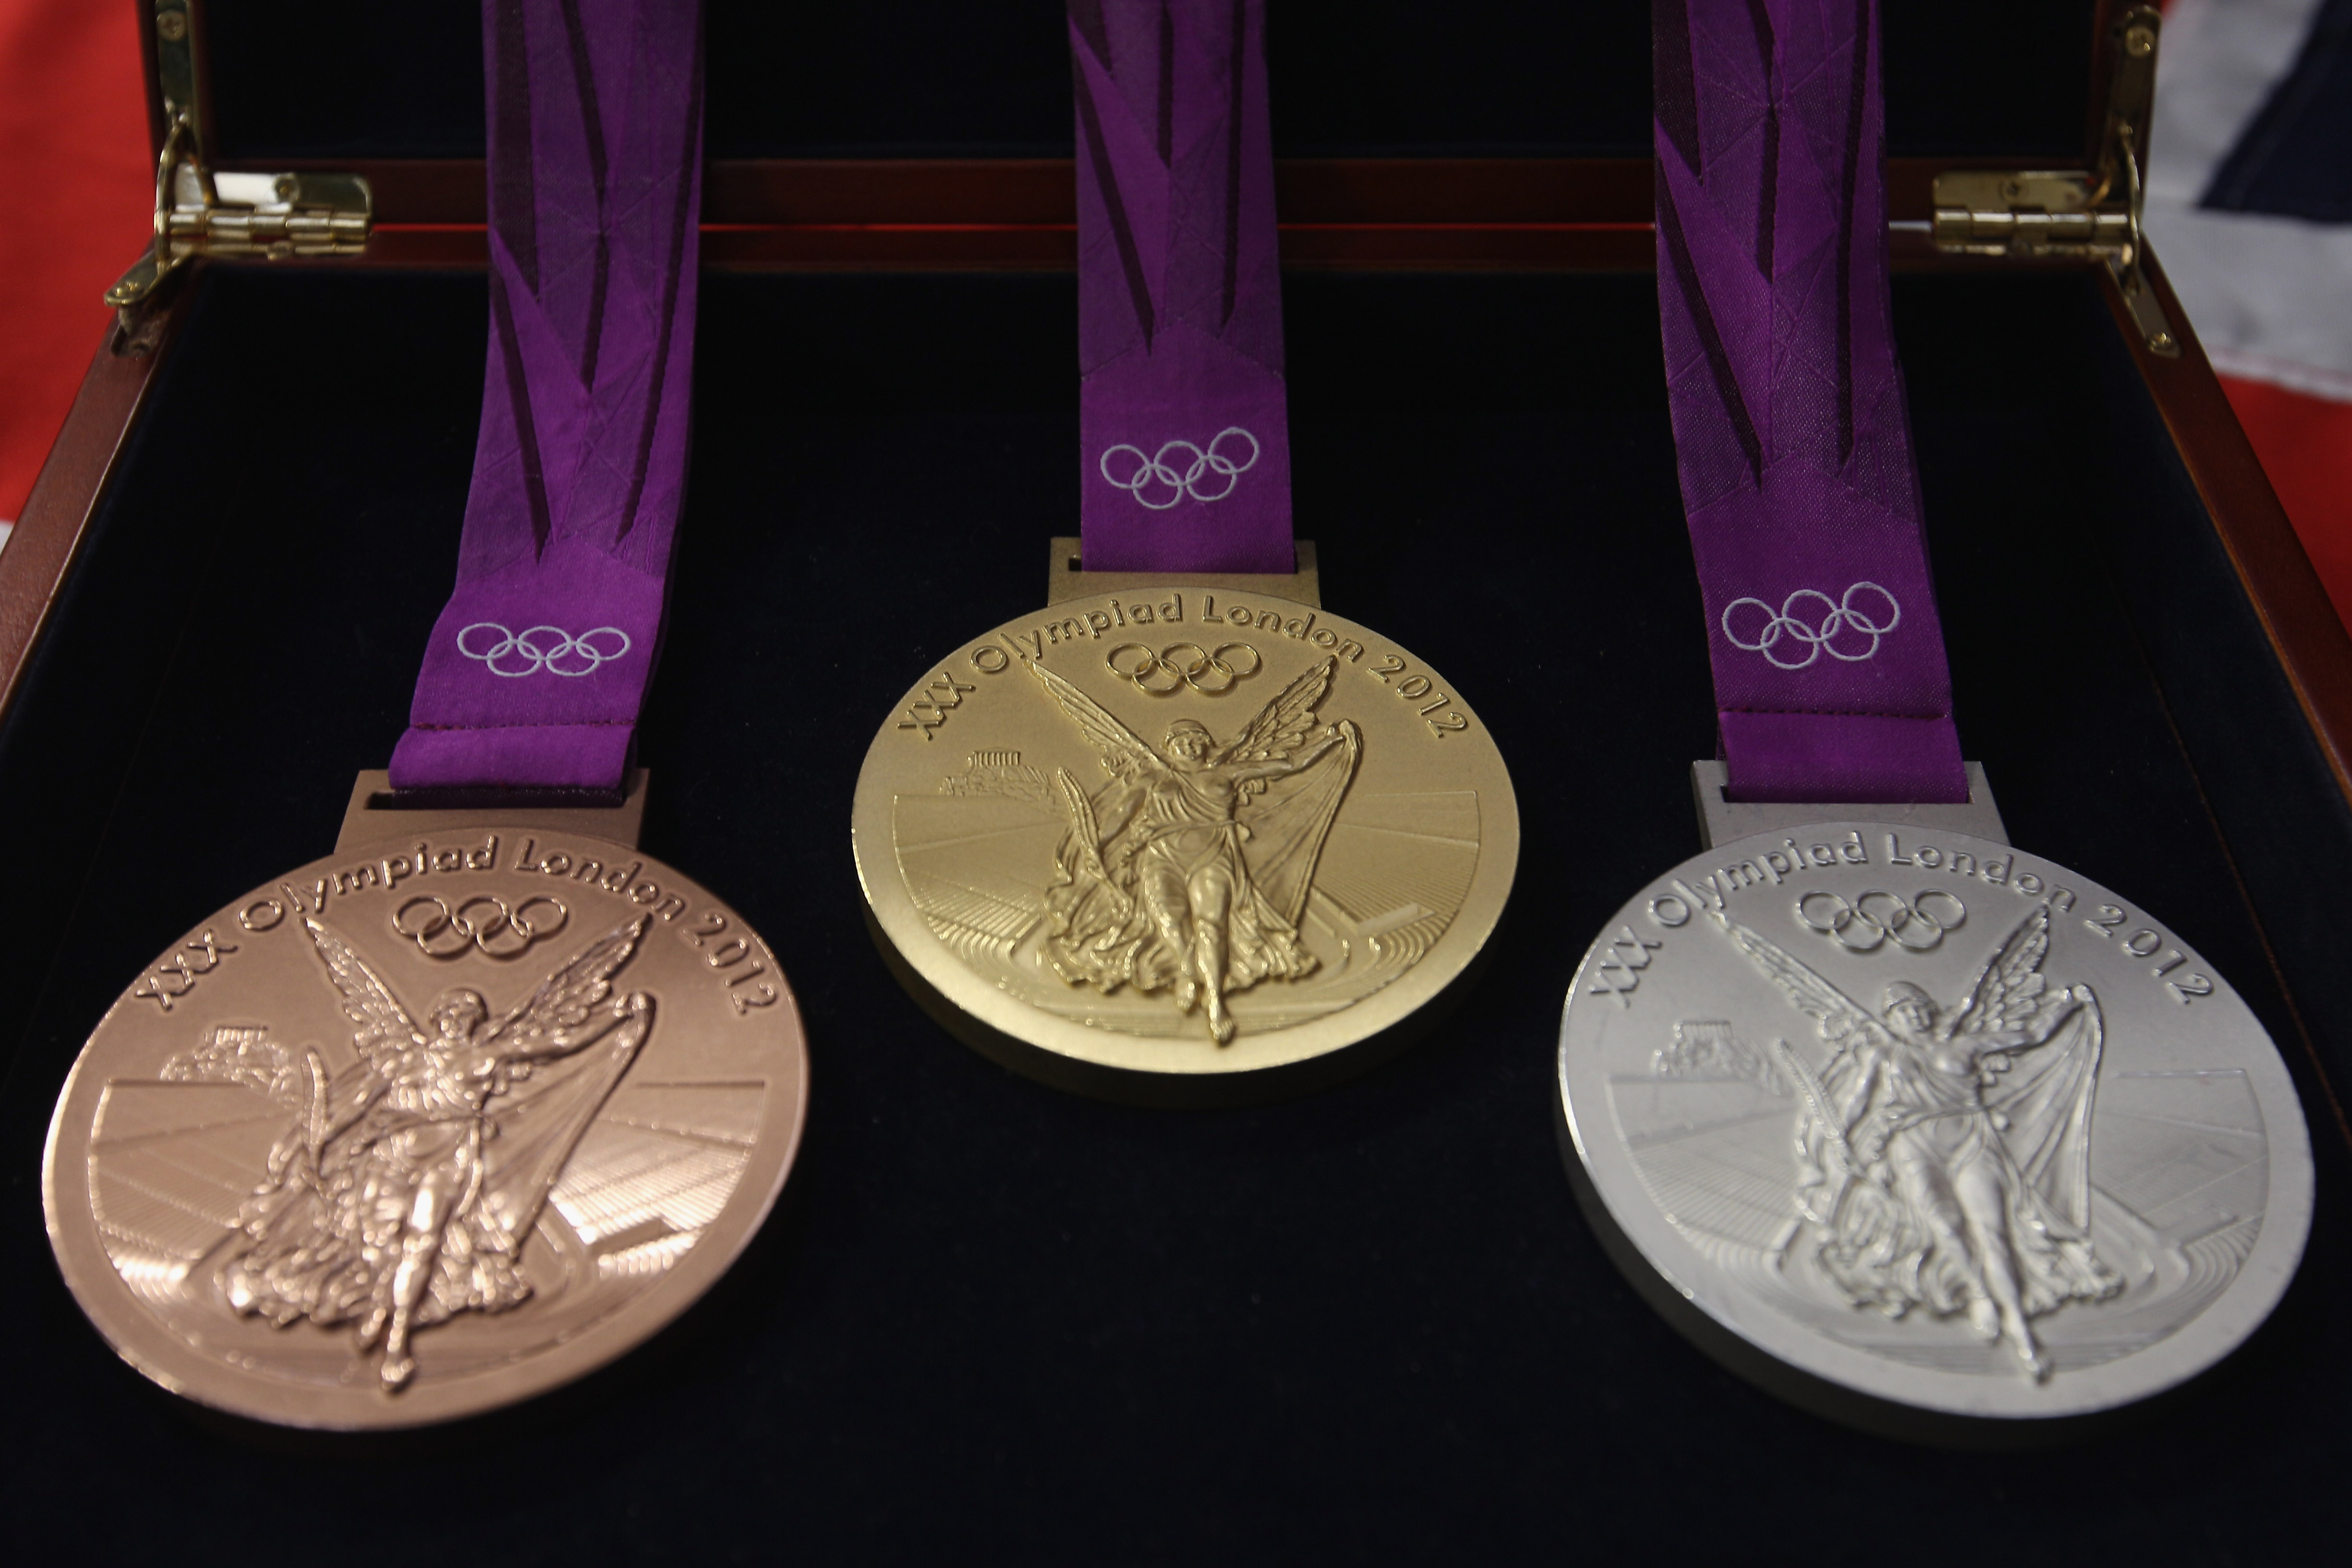 Sporting medals. Олимпийские игры Лондон 2012 медал. Золотая медаль Олимпийских игр Лондон 2012. Олимпийская Золотая медал. Медали олимпиады 2012 Лондон.